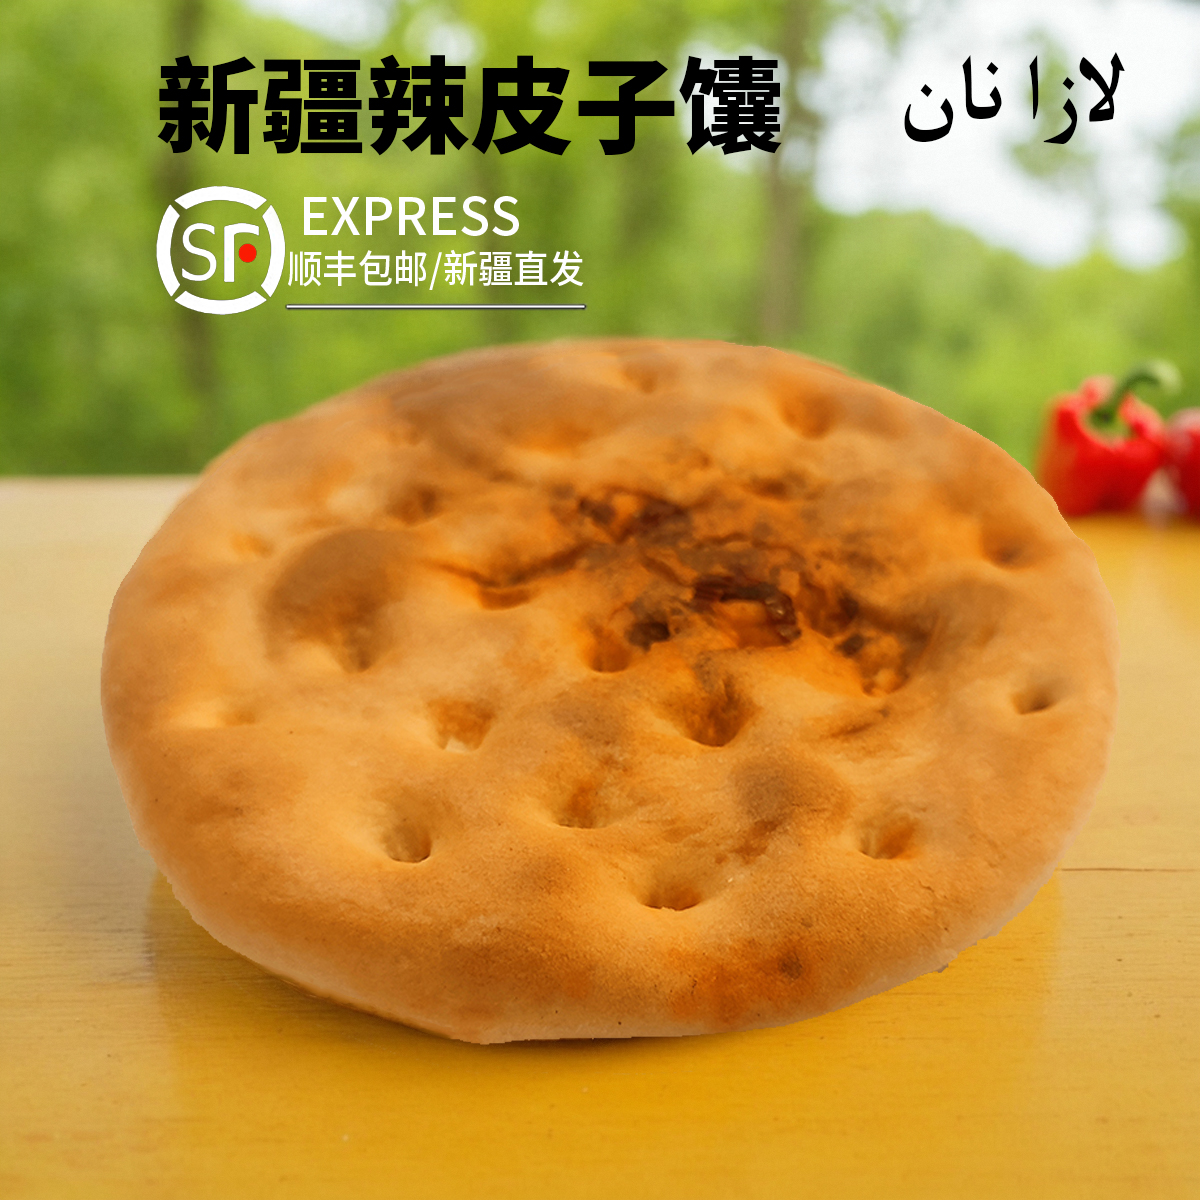 新疆正宗特产美食辣皮子夹心烤馕手工烧饼零食小吃传统糕点心包邮